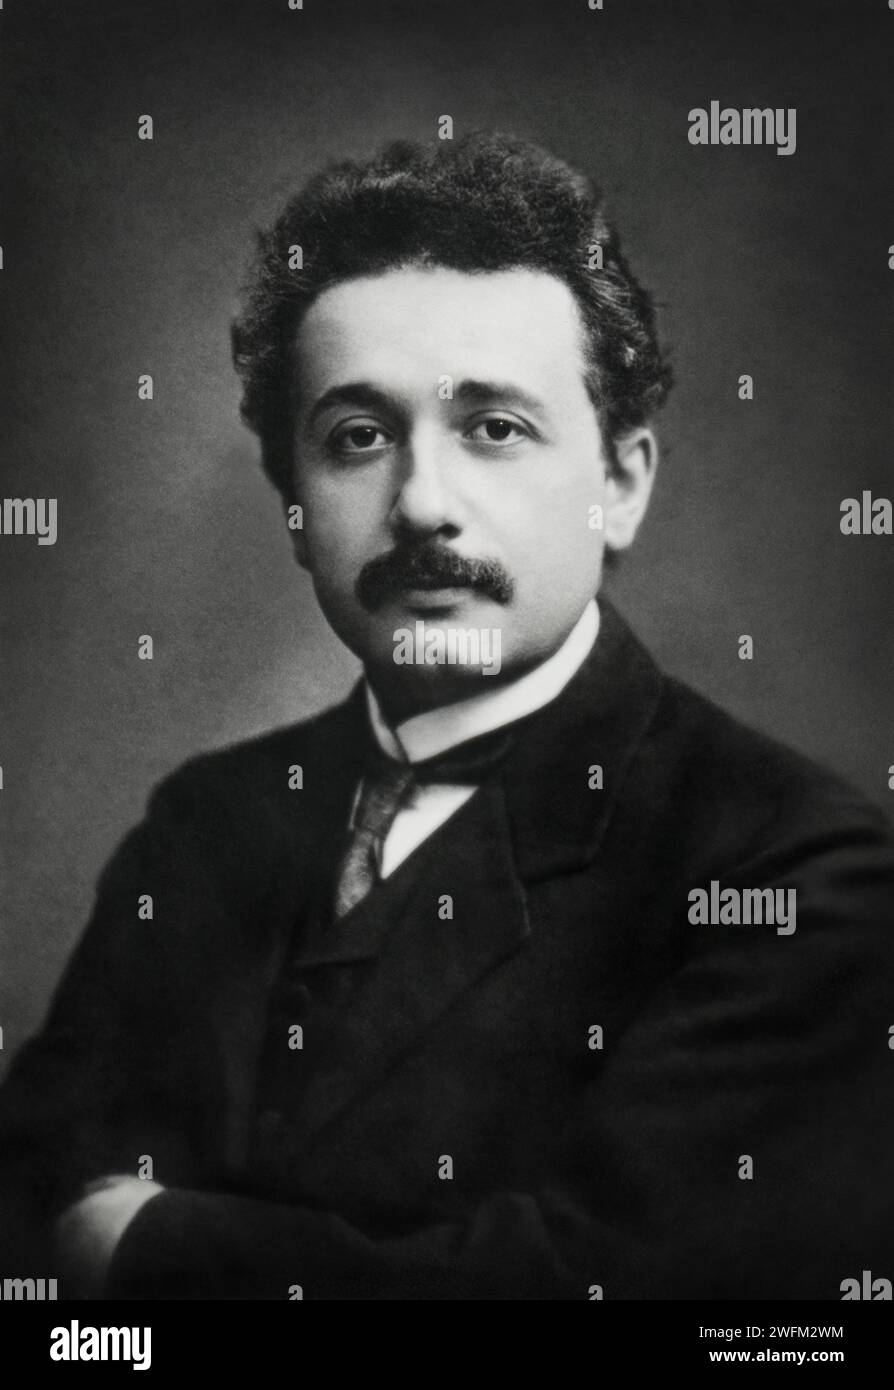 Portrait of Albert Einstein (1879-1955) in 1912. Stock Photo